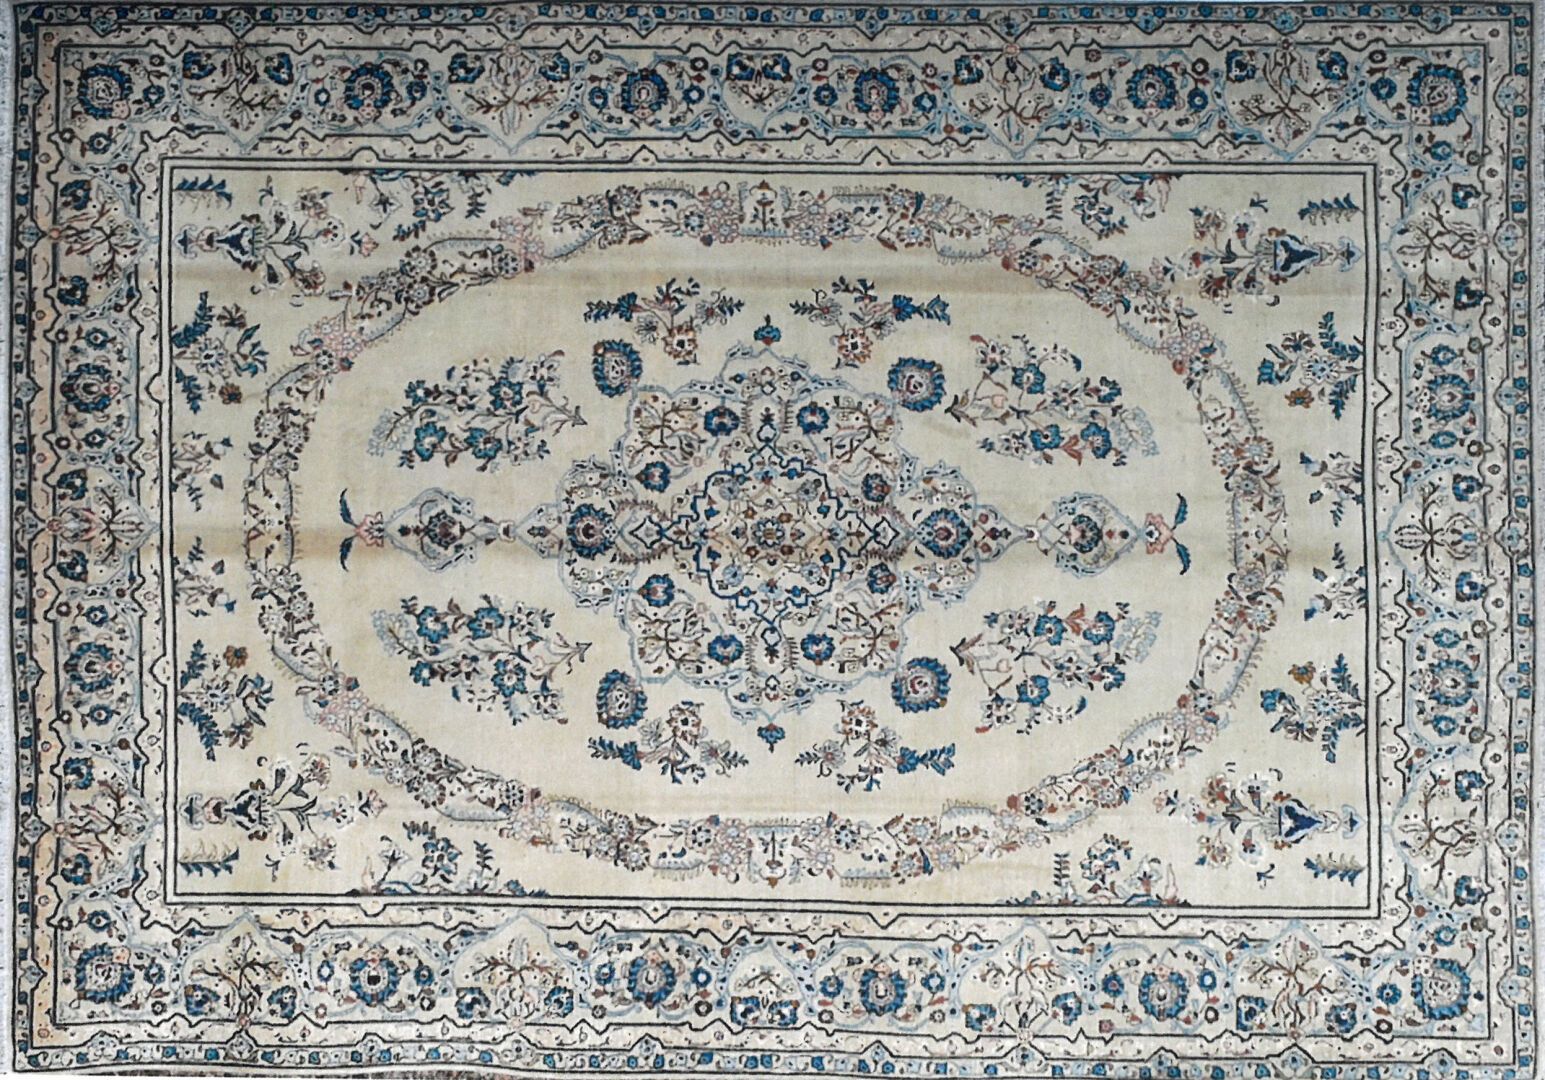 Null Teppiche aus dem Iran - Herkunft Kechan.

Flor: Wolle. Ketten: Baumwolle

c&hellip;